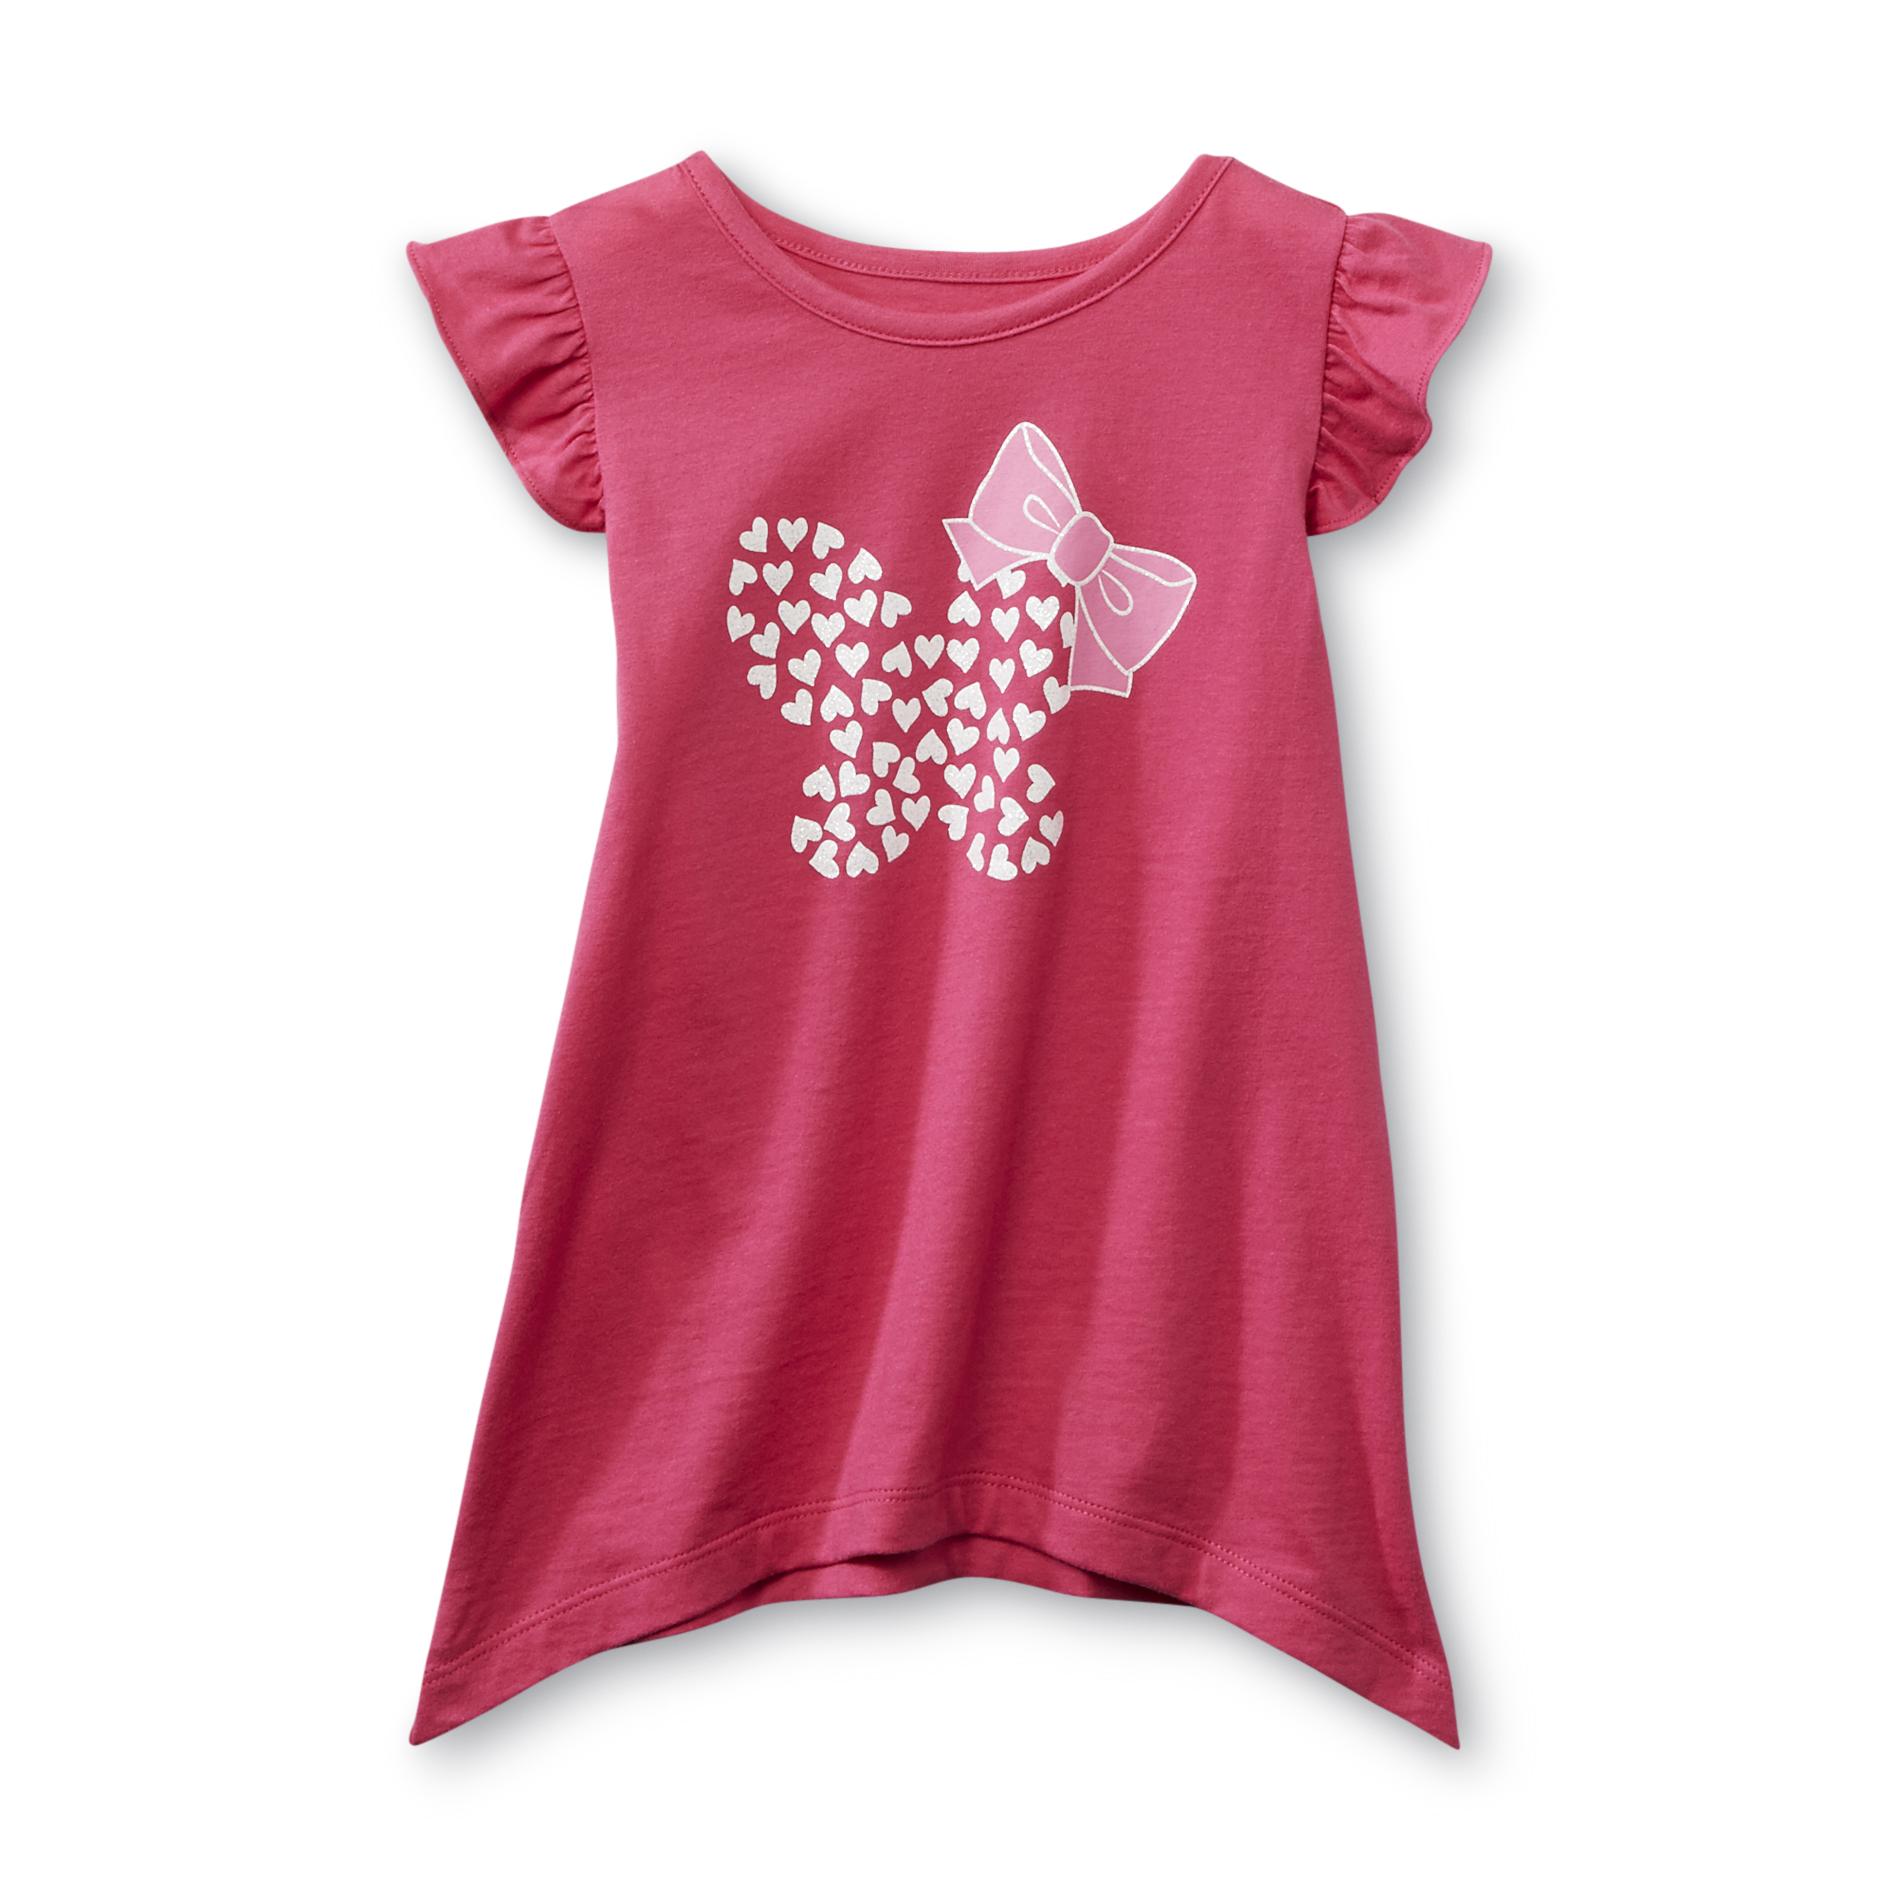 WonderKids Infant & Toddler Girl's Tunic Top - Heart Print